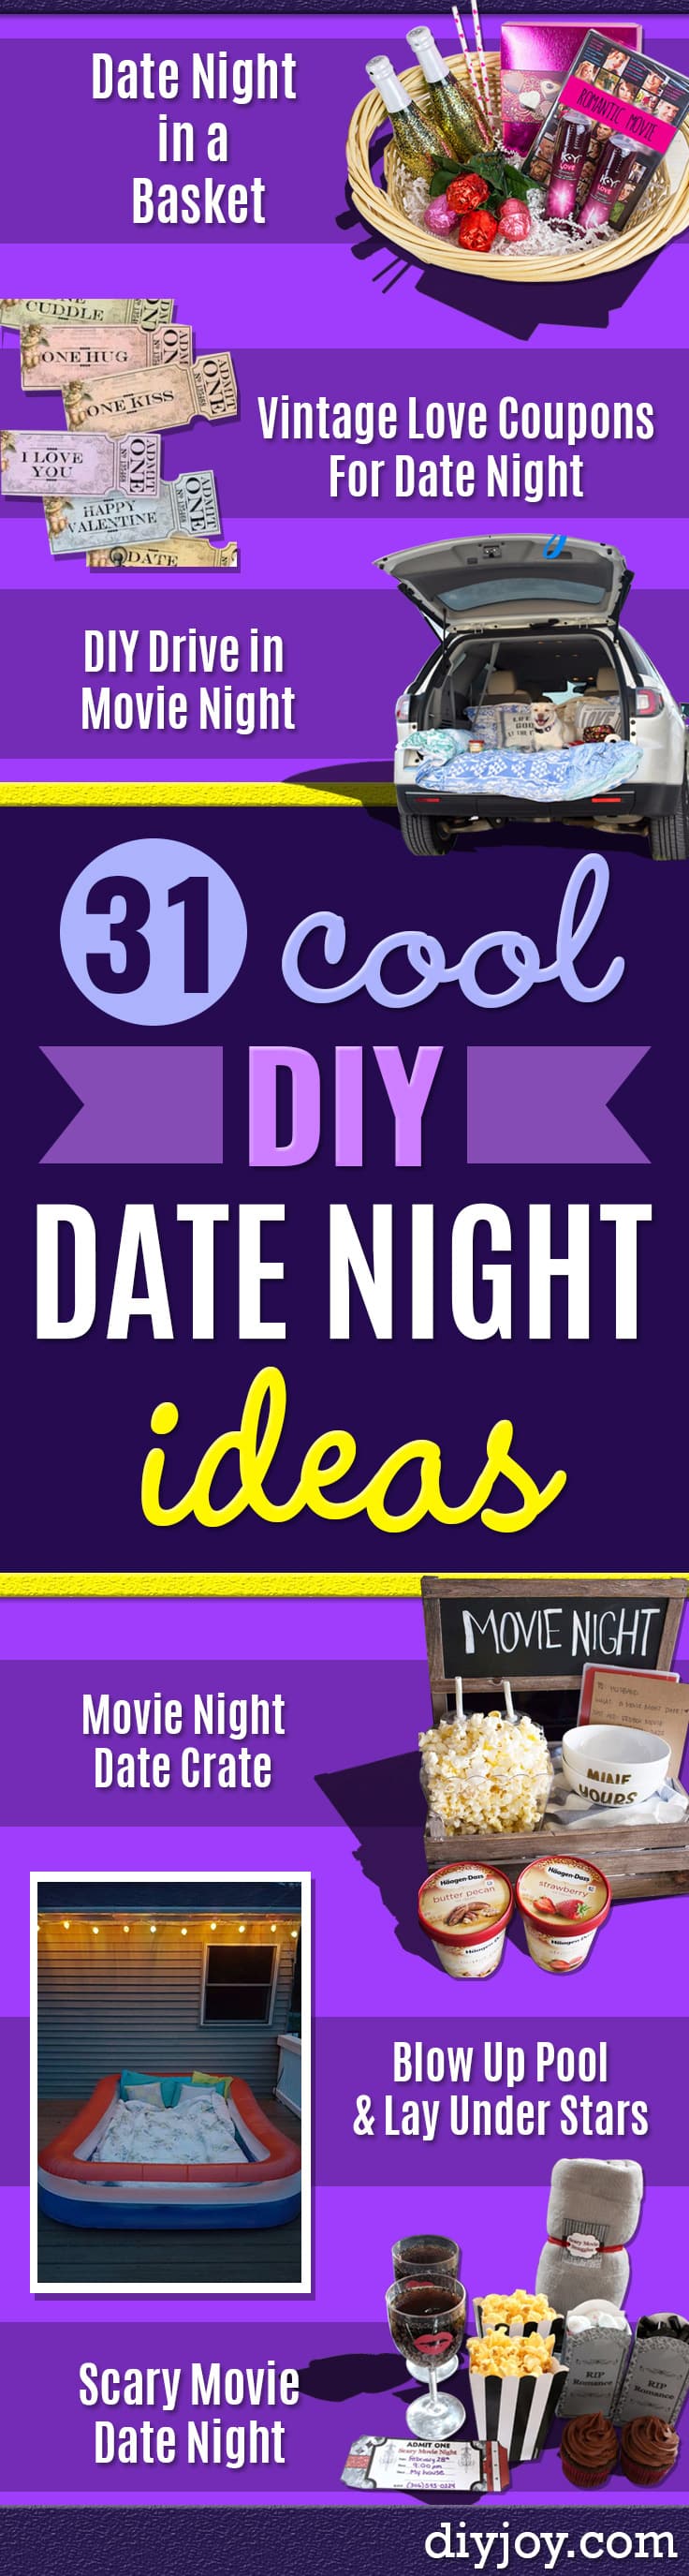 diy date night ideas